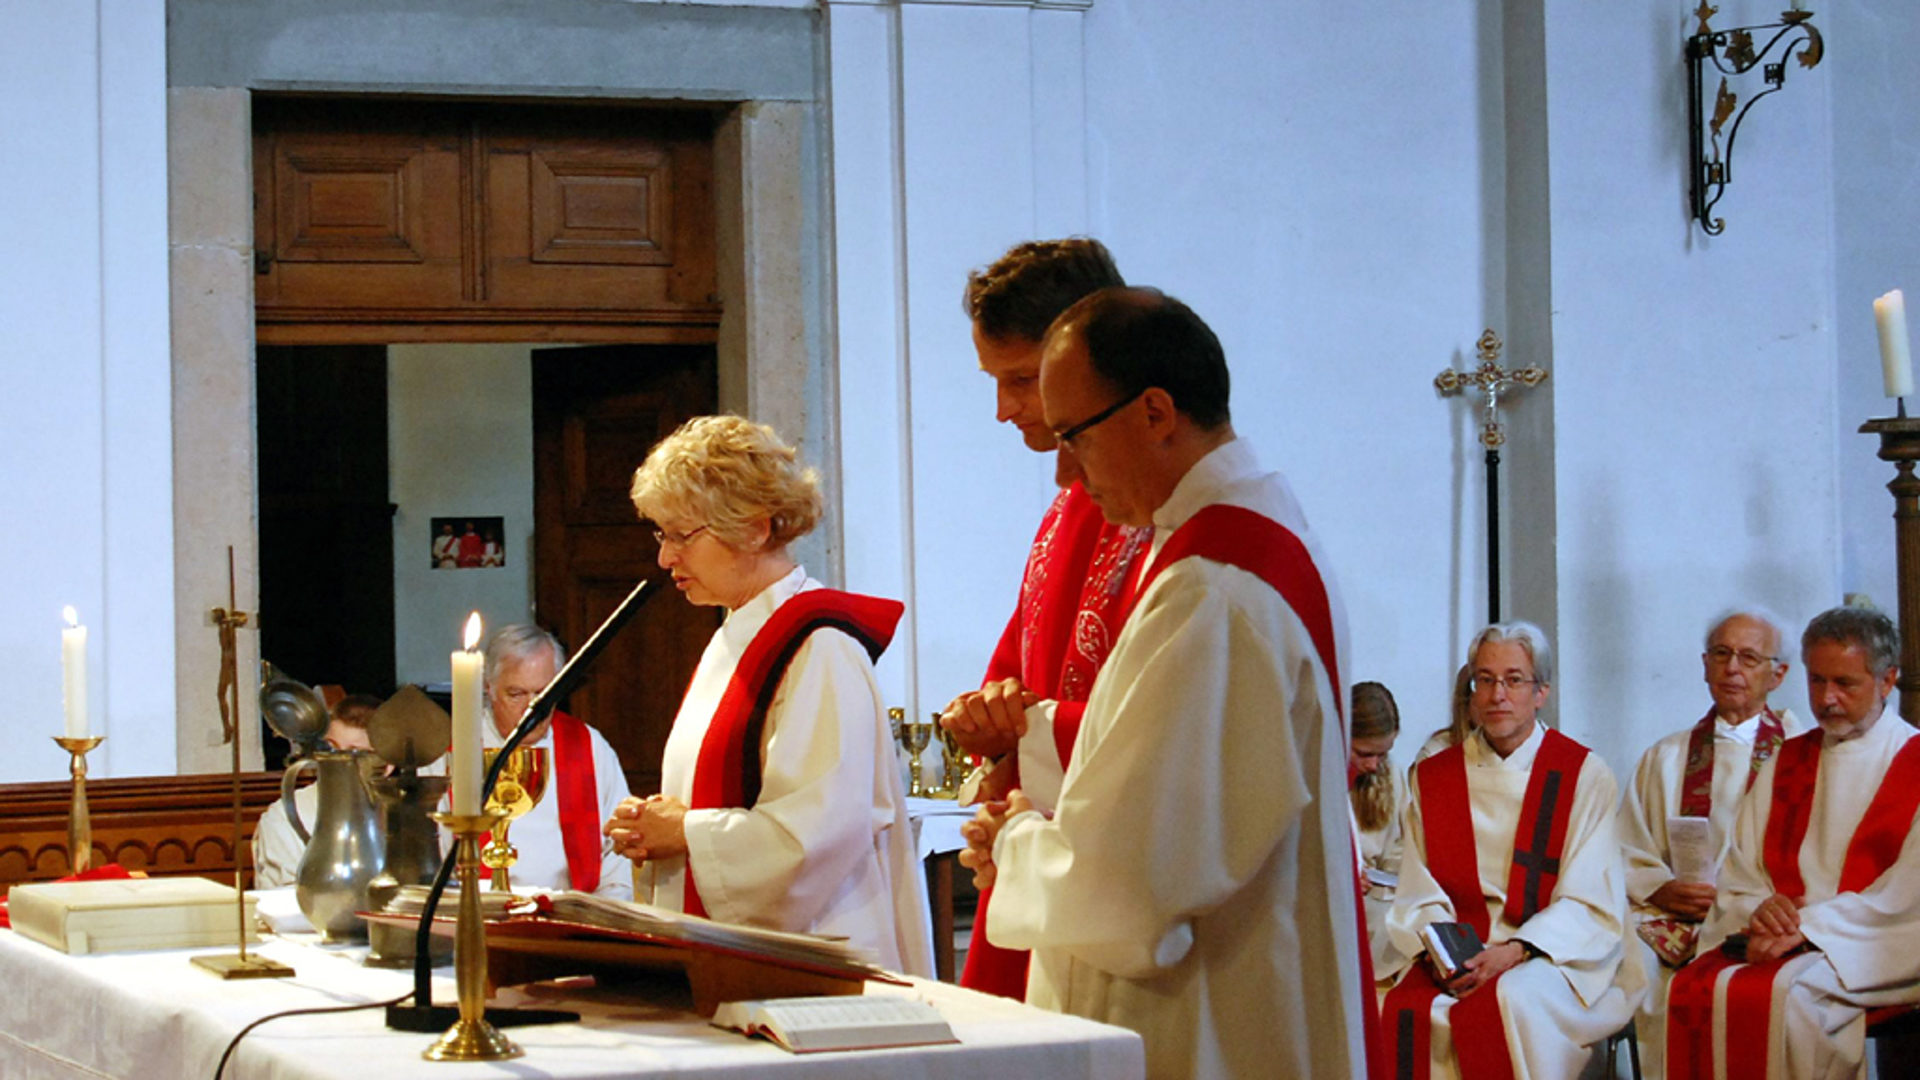 Priesterin am Altar: In der römisch-katholischen Kirche weiterhin nicht möglich. Im Bild eine christkatholische Priesterin feiert Eucharistie.